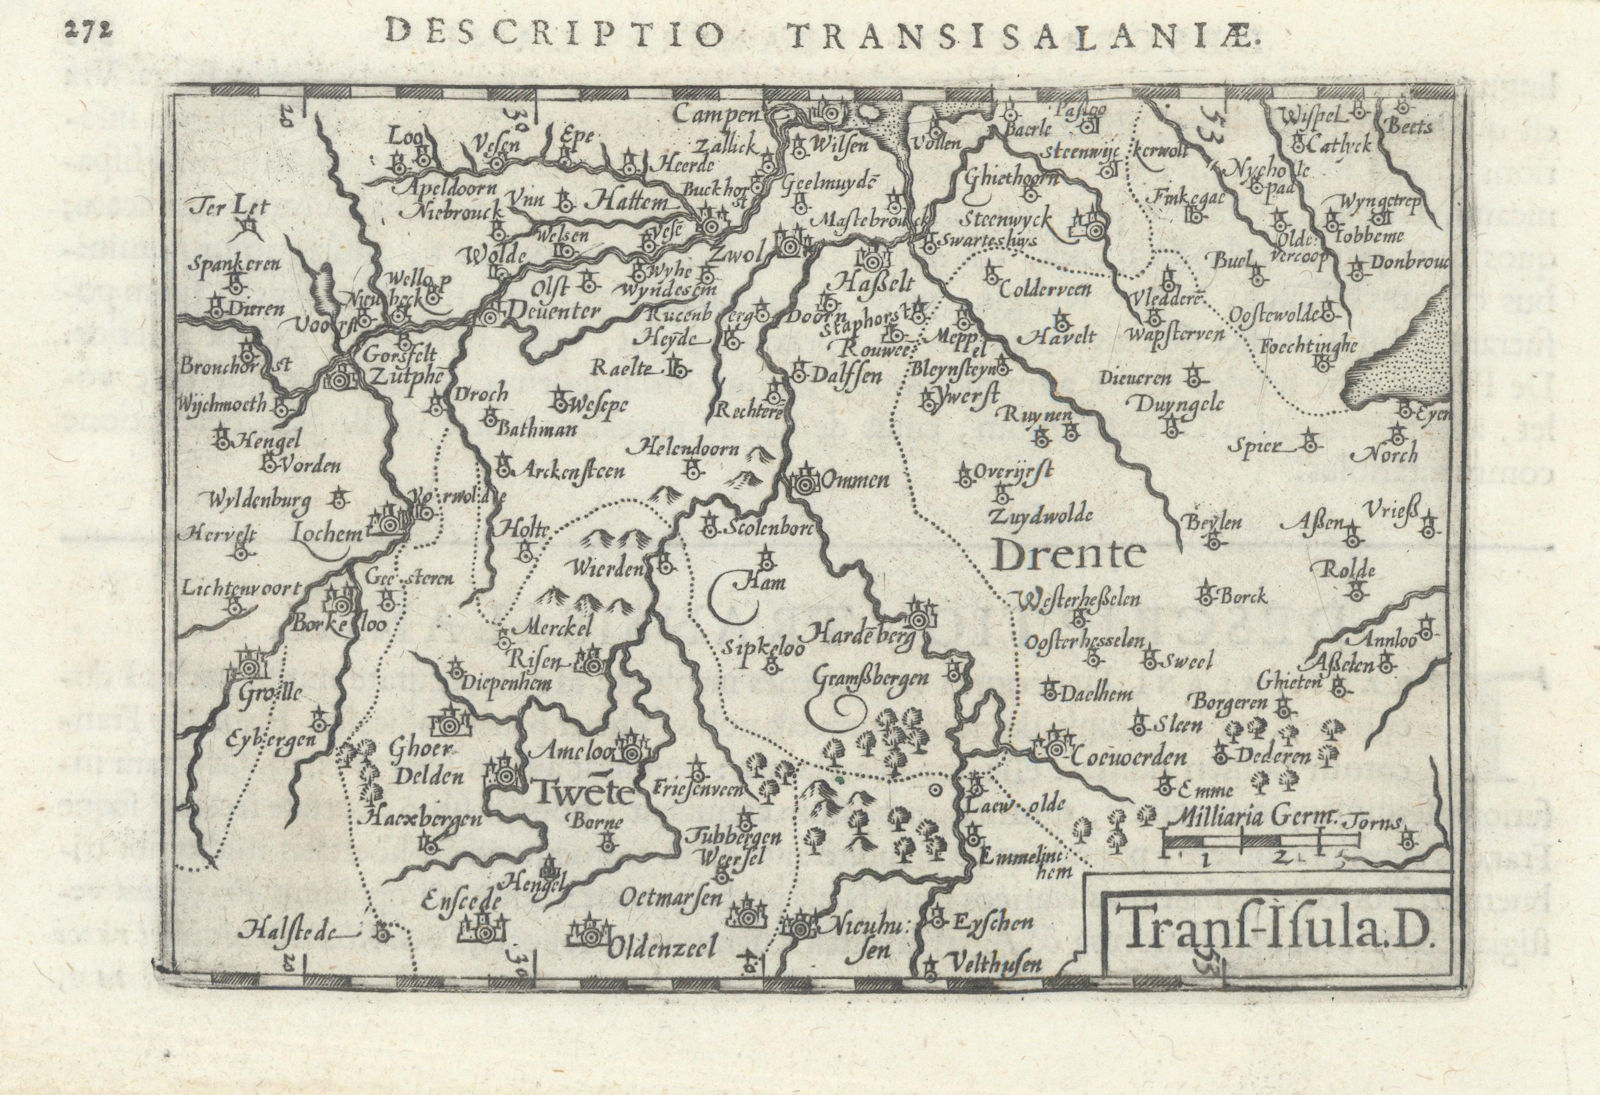 Trans-Isula by Bertius / Langenes. Overijssel & Drenthe, Netherlands 1603 map